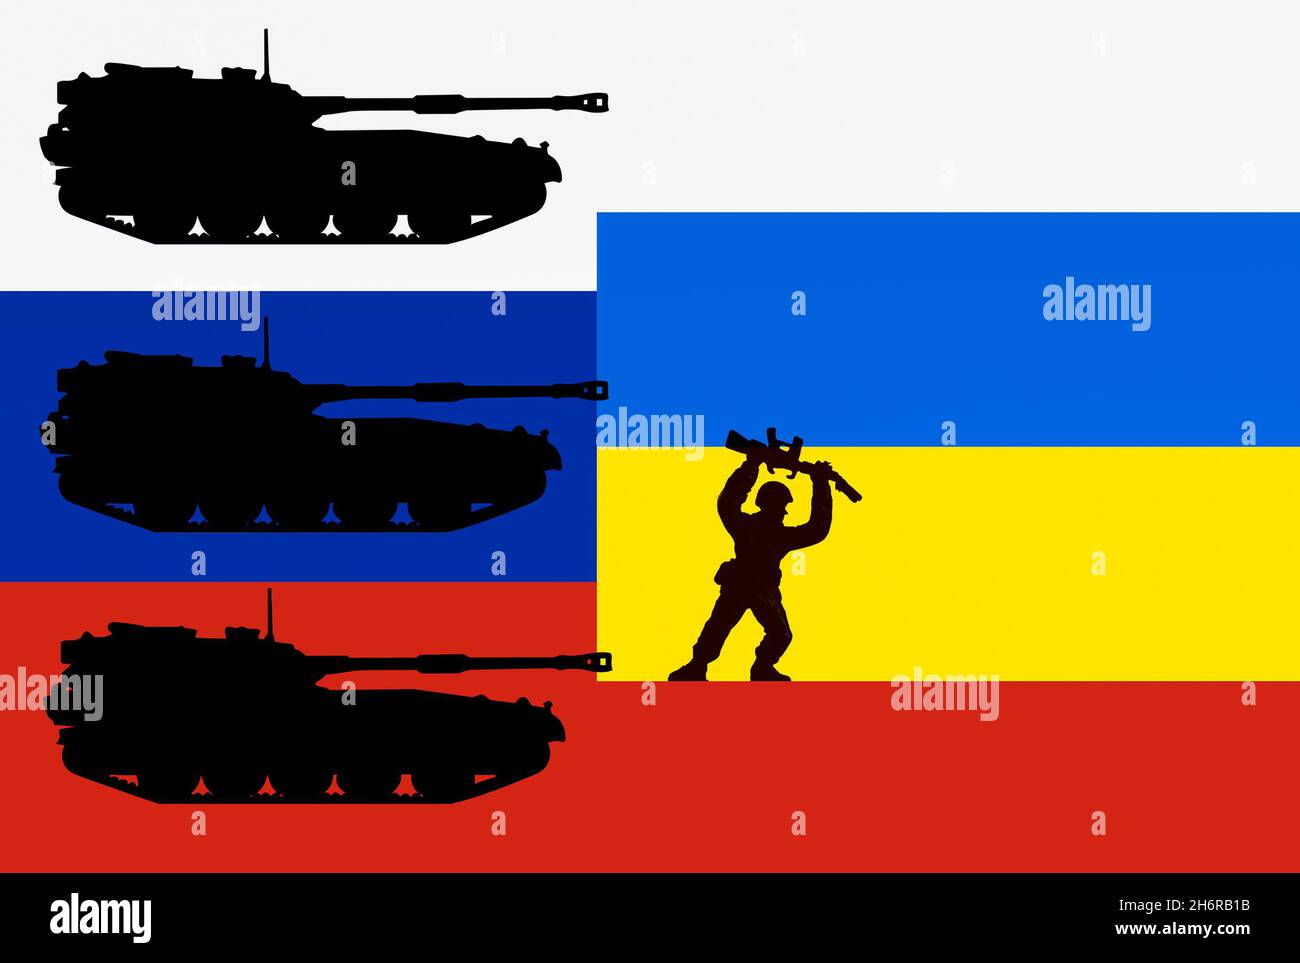 Los tanques en la bandera de Rusia con la bandera de Ucrania se superponen. Rusia/Ucrania Tensión, conflicto, invasión, guerra..., concepto Foto de stock